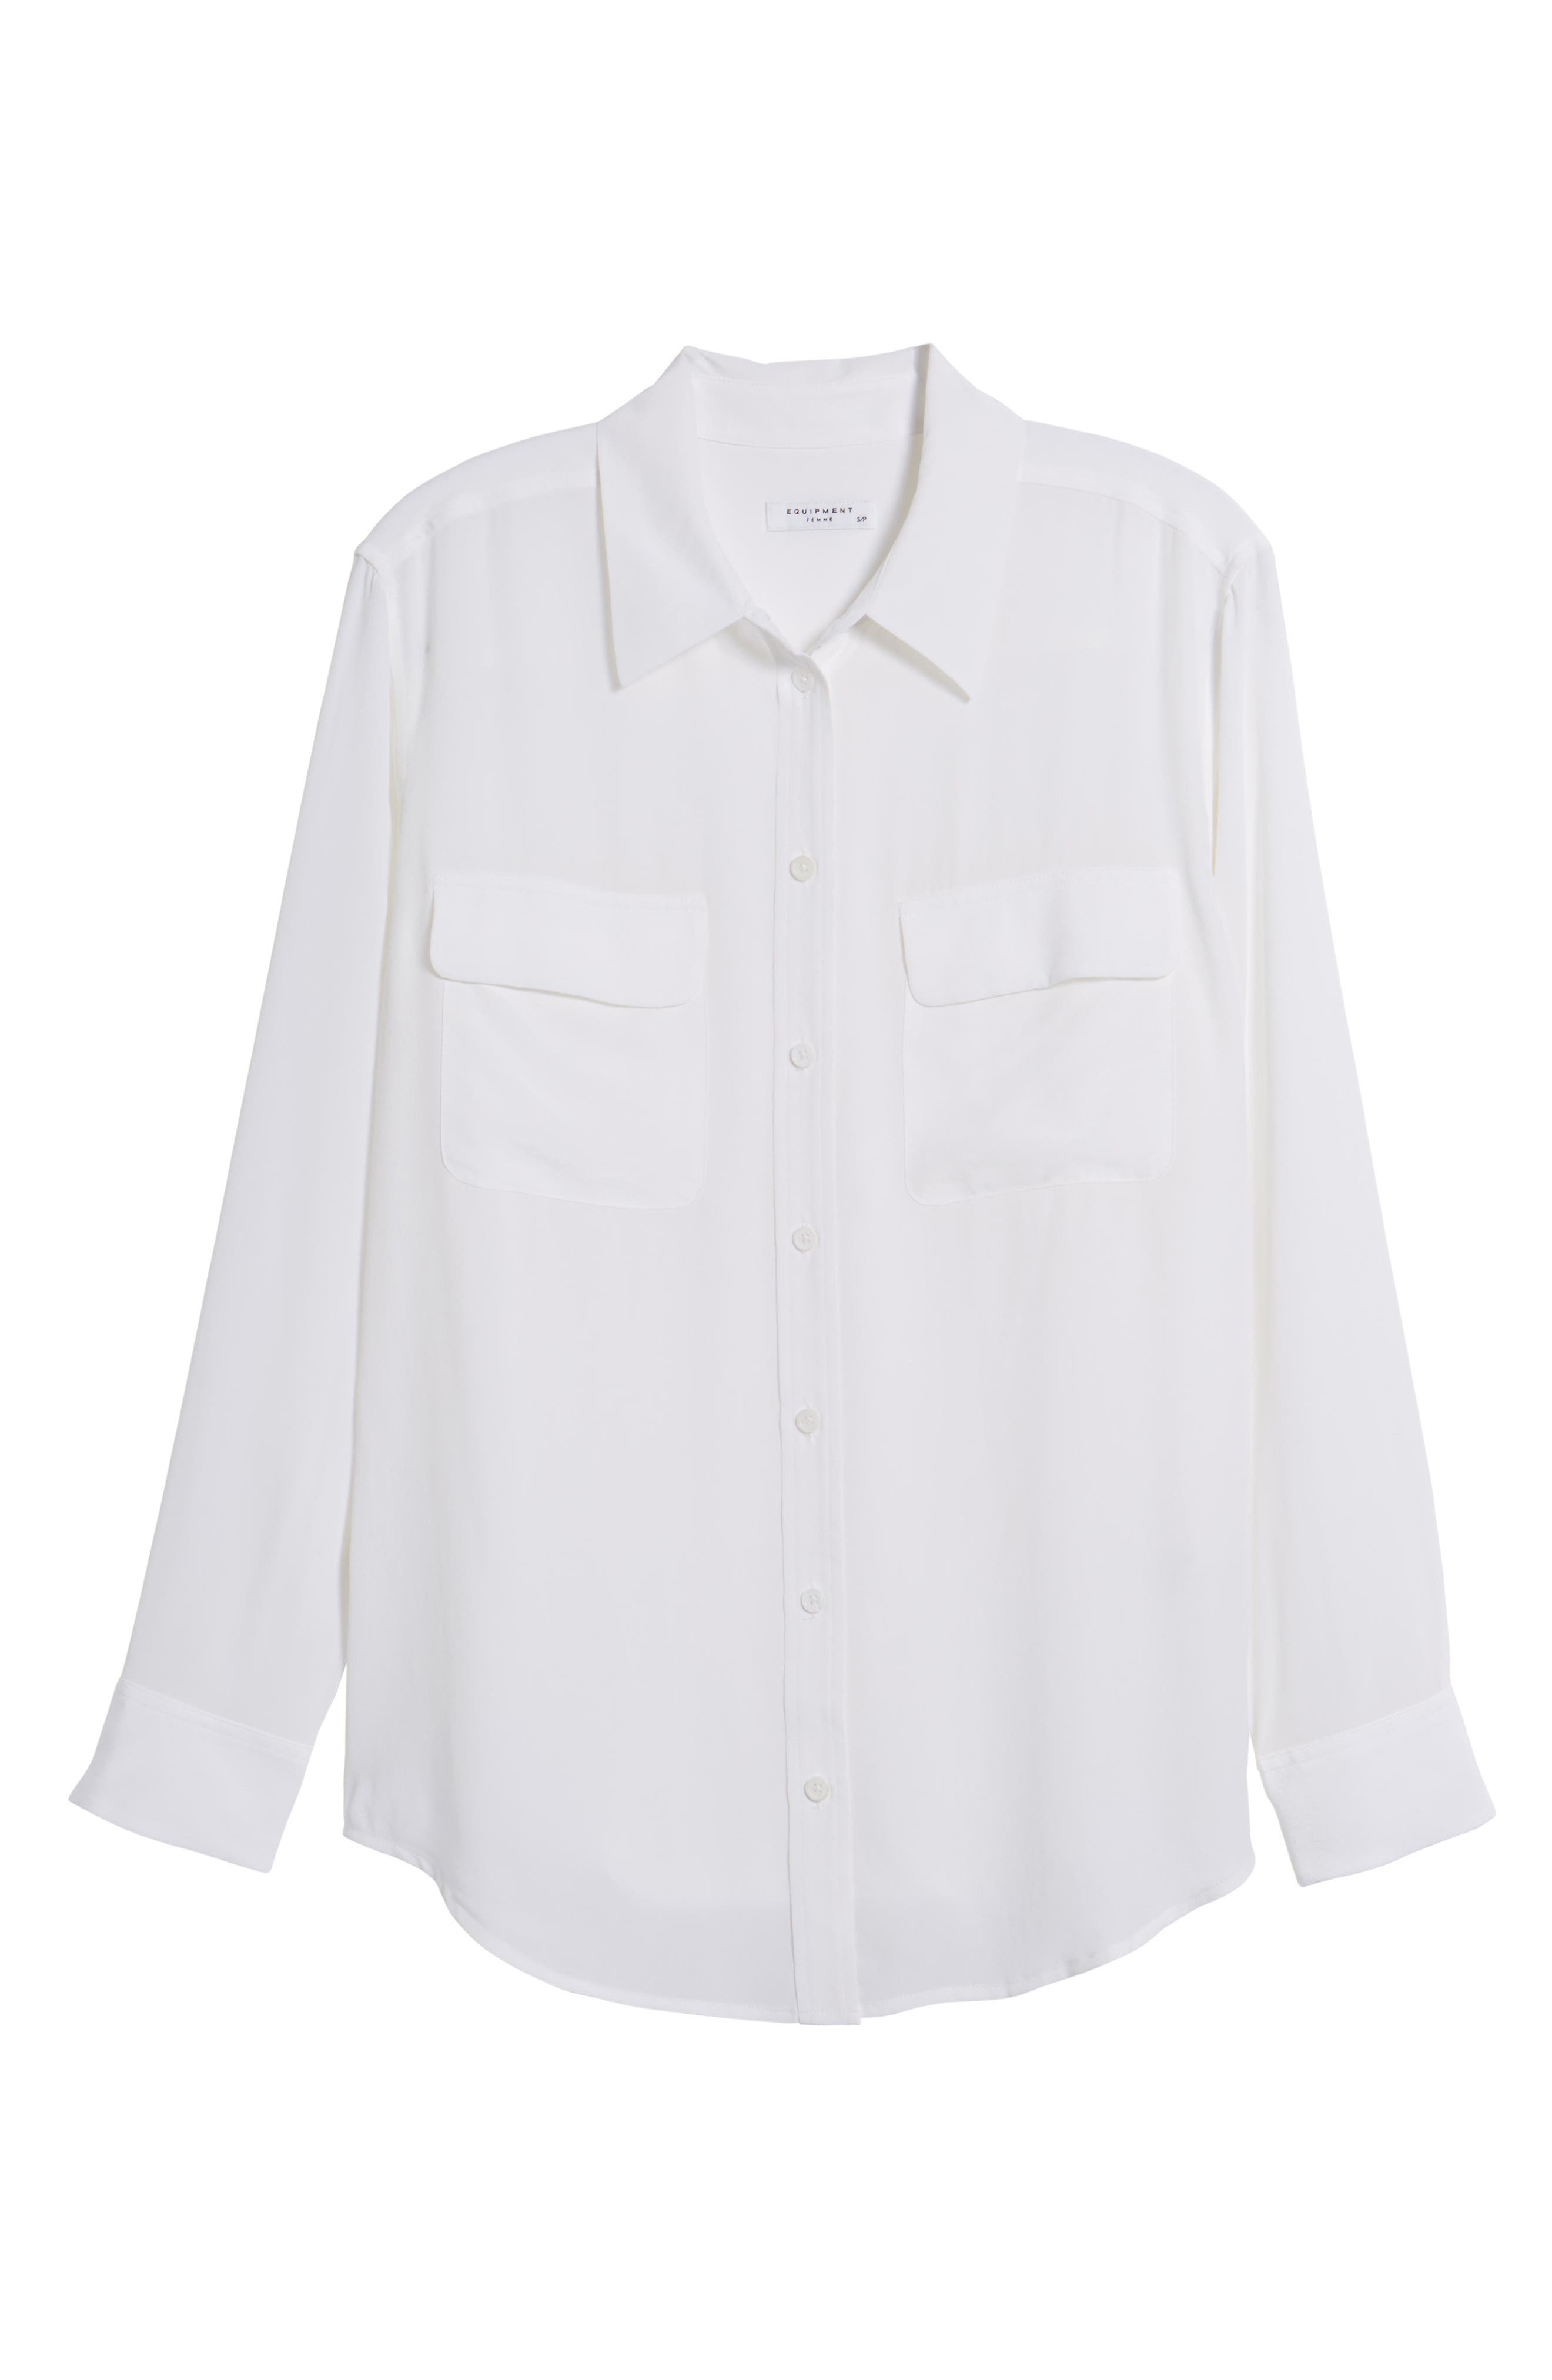 EQUIPMENT 'Signature' Silk Shirt in Bright White | ModeSens